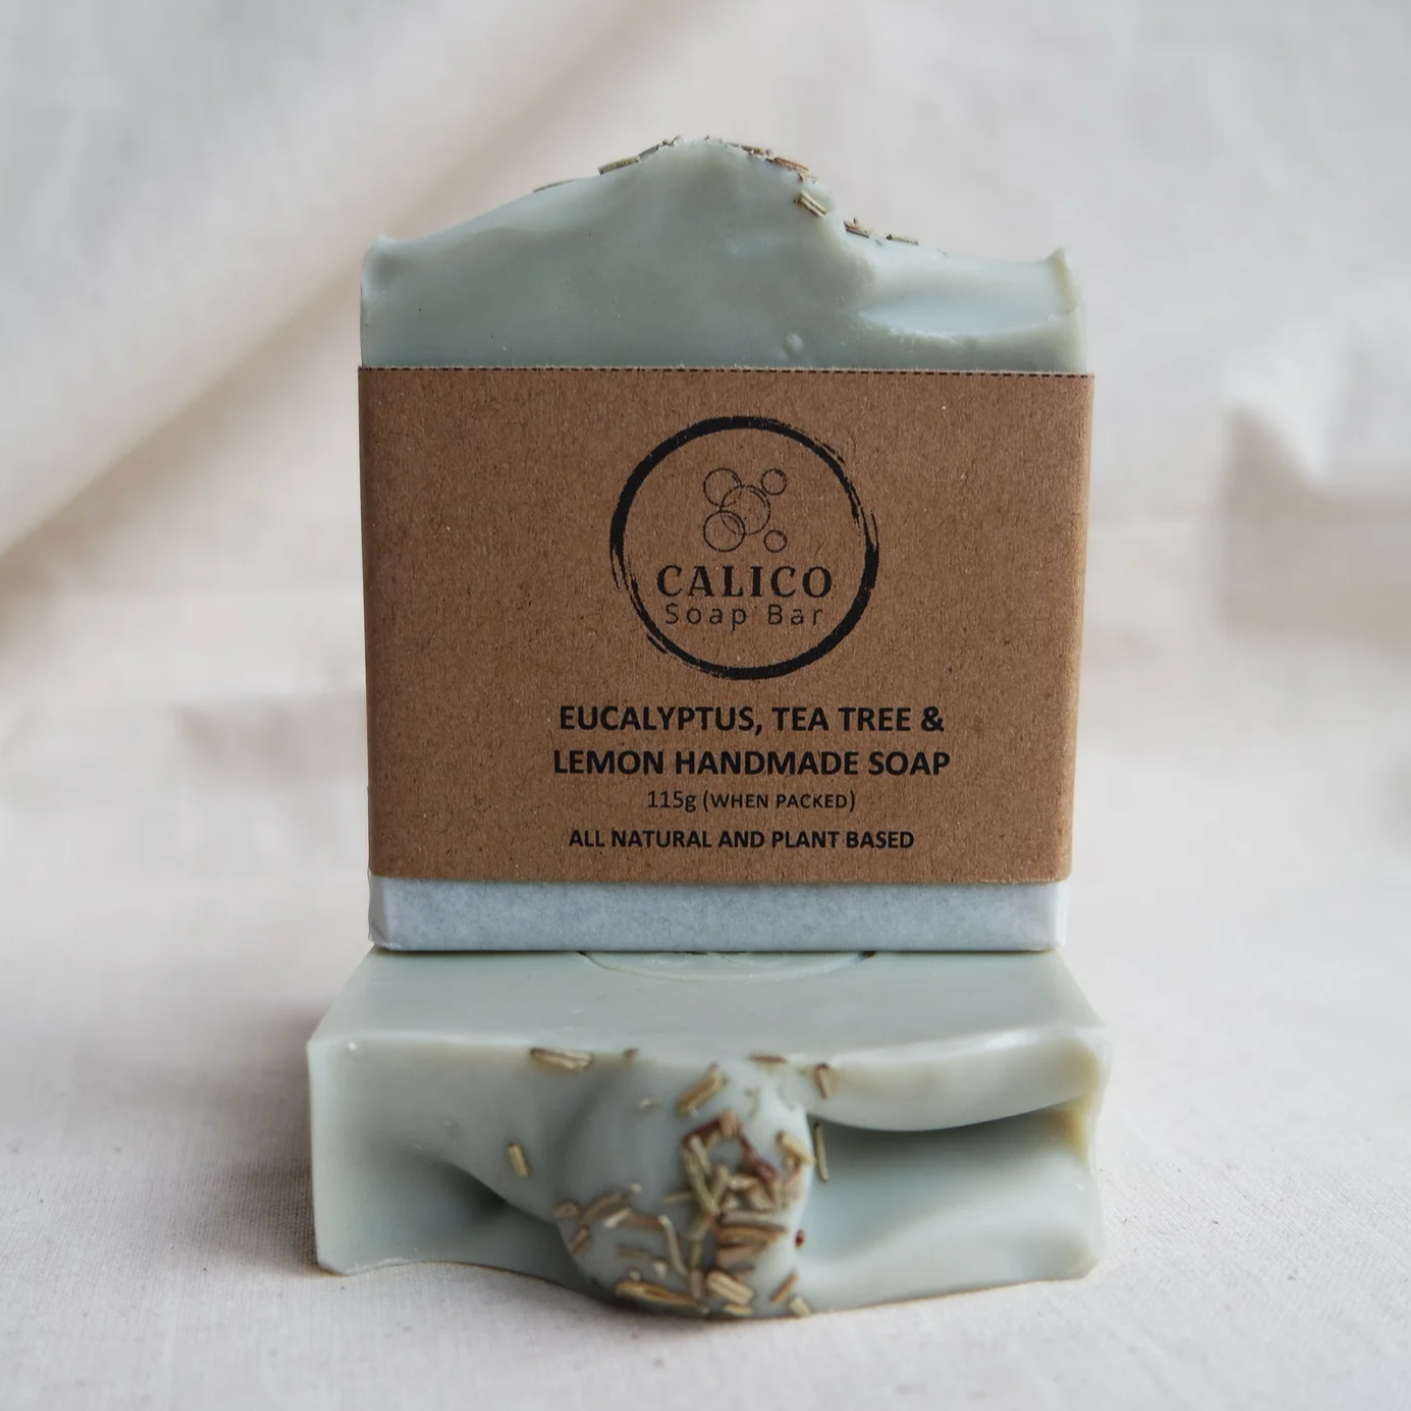 Calico handmade soap bar - Eucalyptus, Tea Tree & Lemon Soap